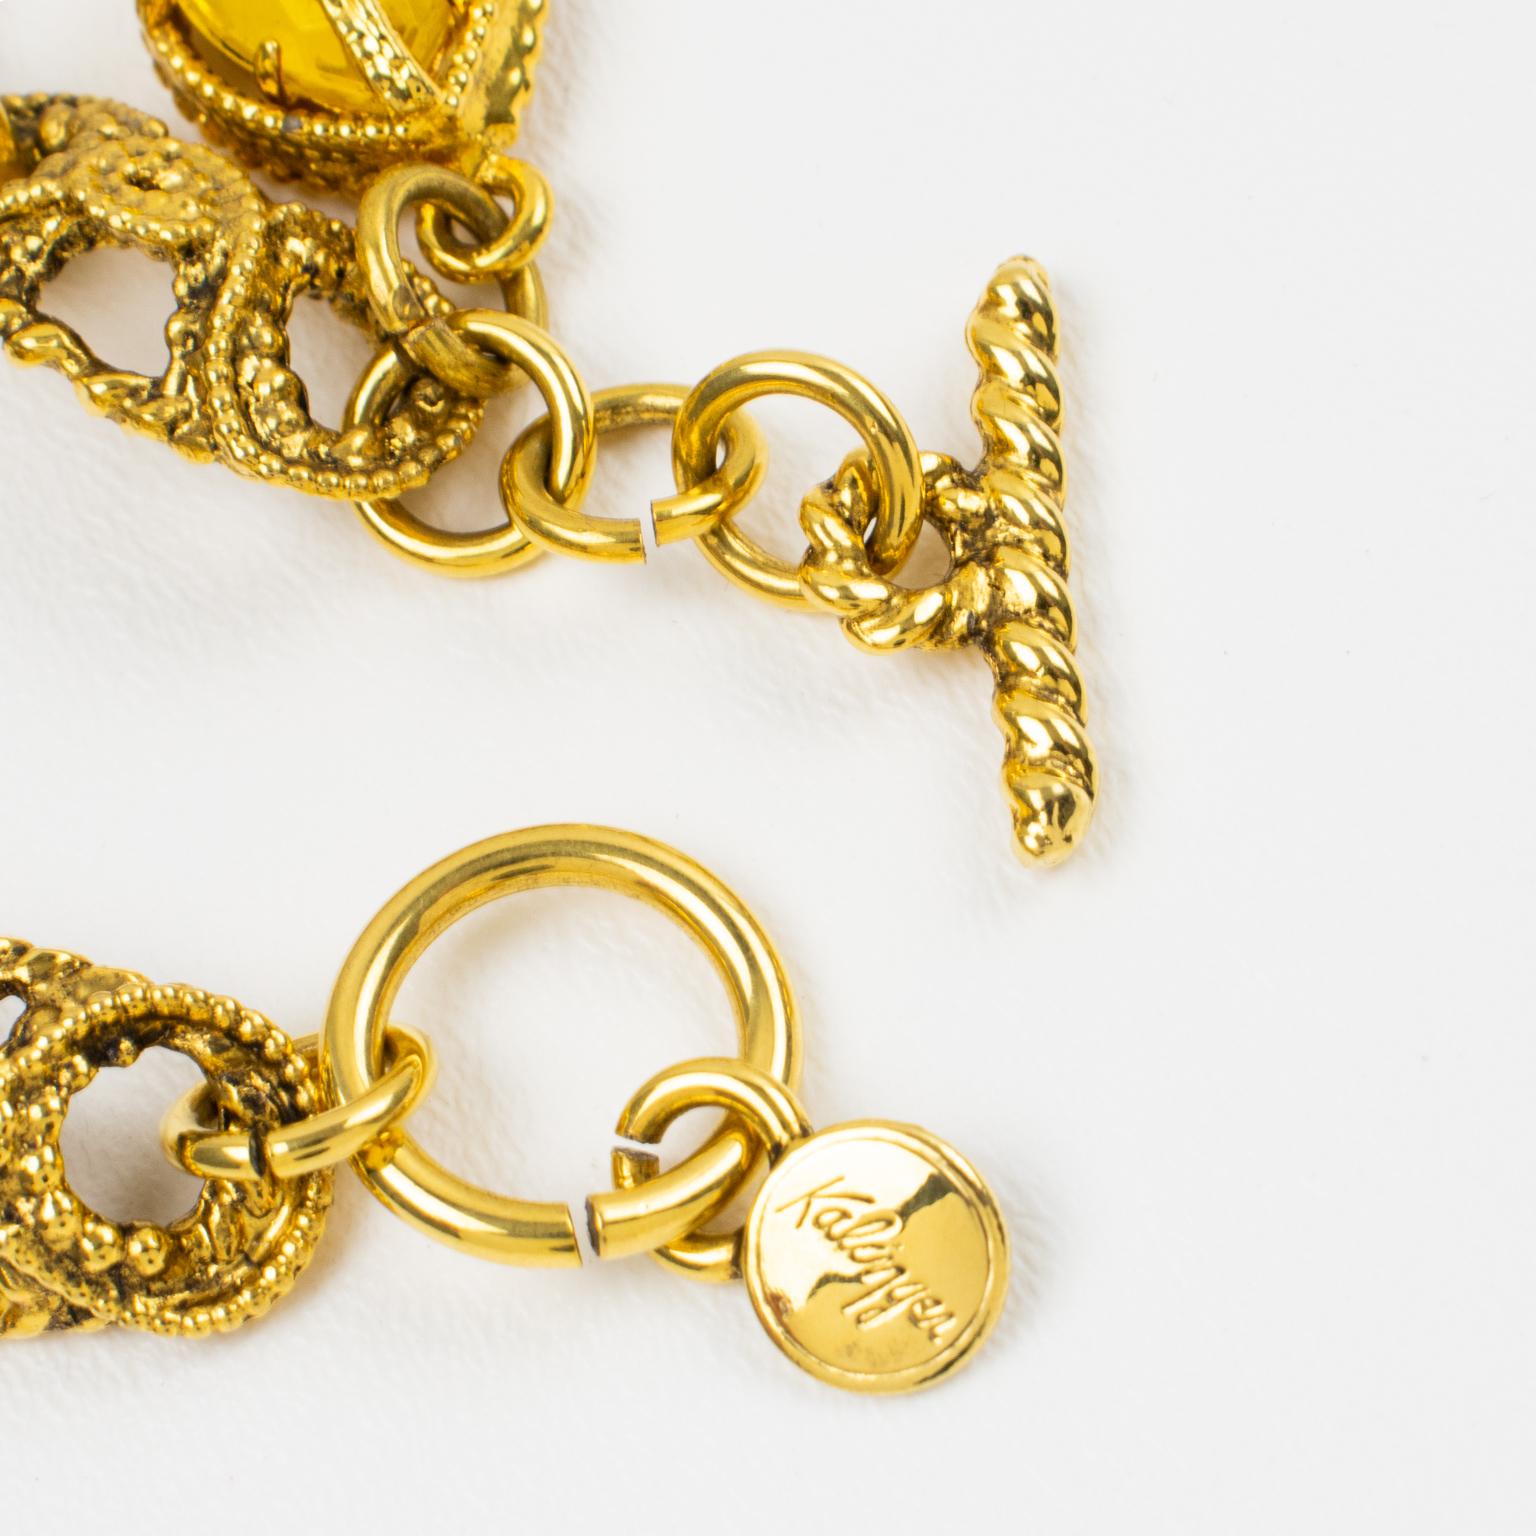 Modernist Kalinger Paris Gilt Metal Link Bracelet with Jewel Charms